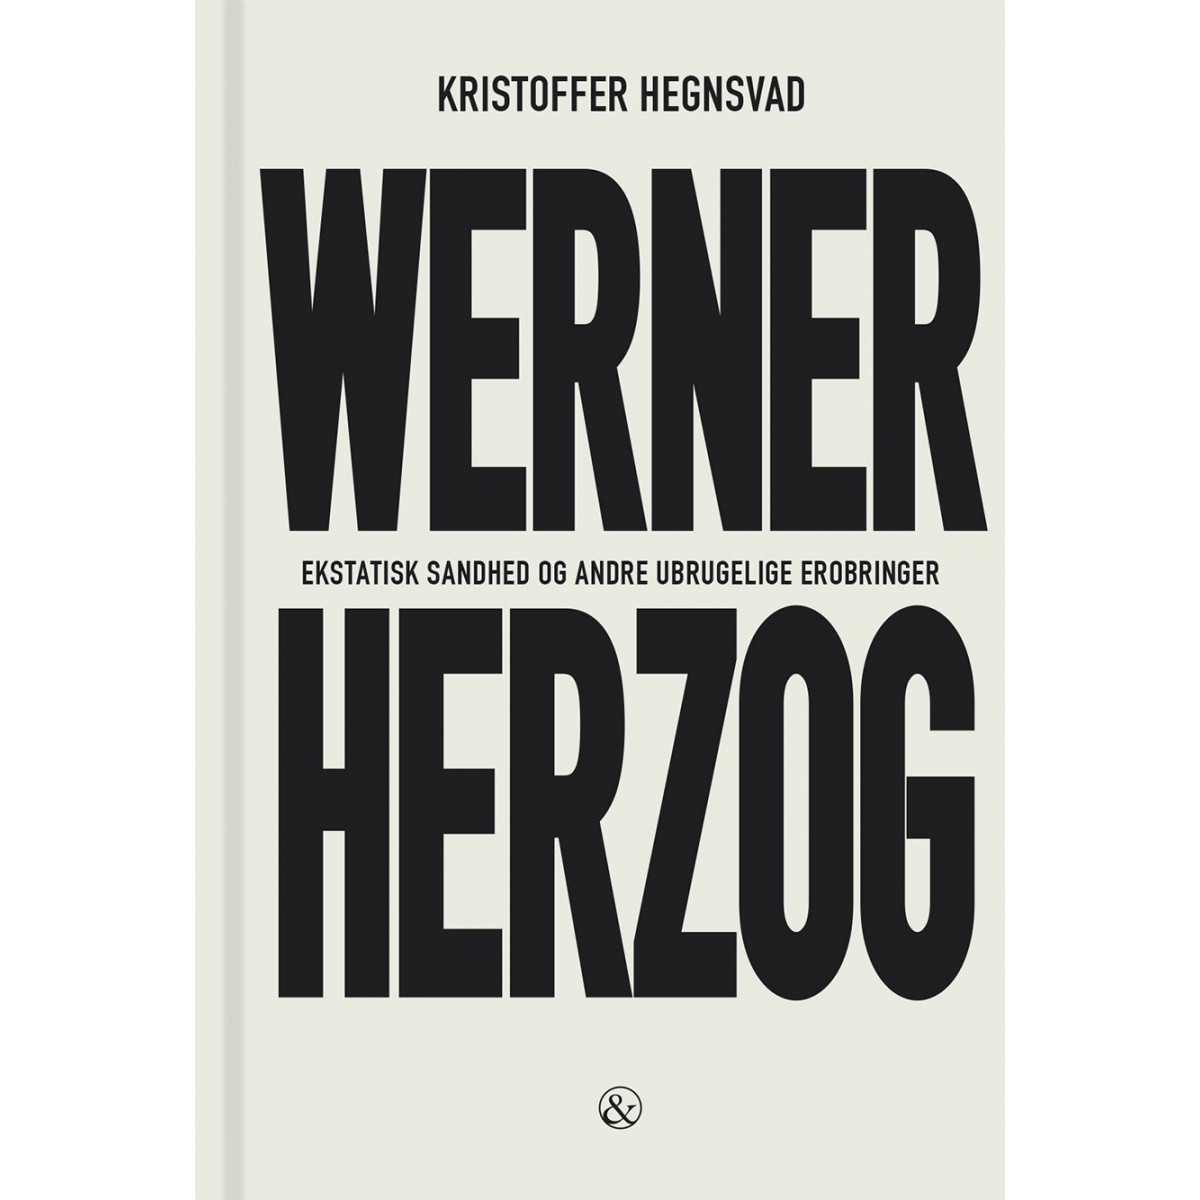 Kristoffer Hegnsvad: Werner Herzog